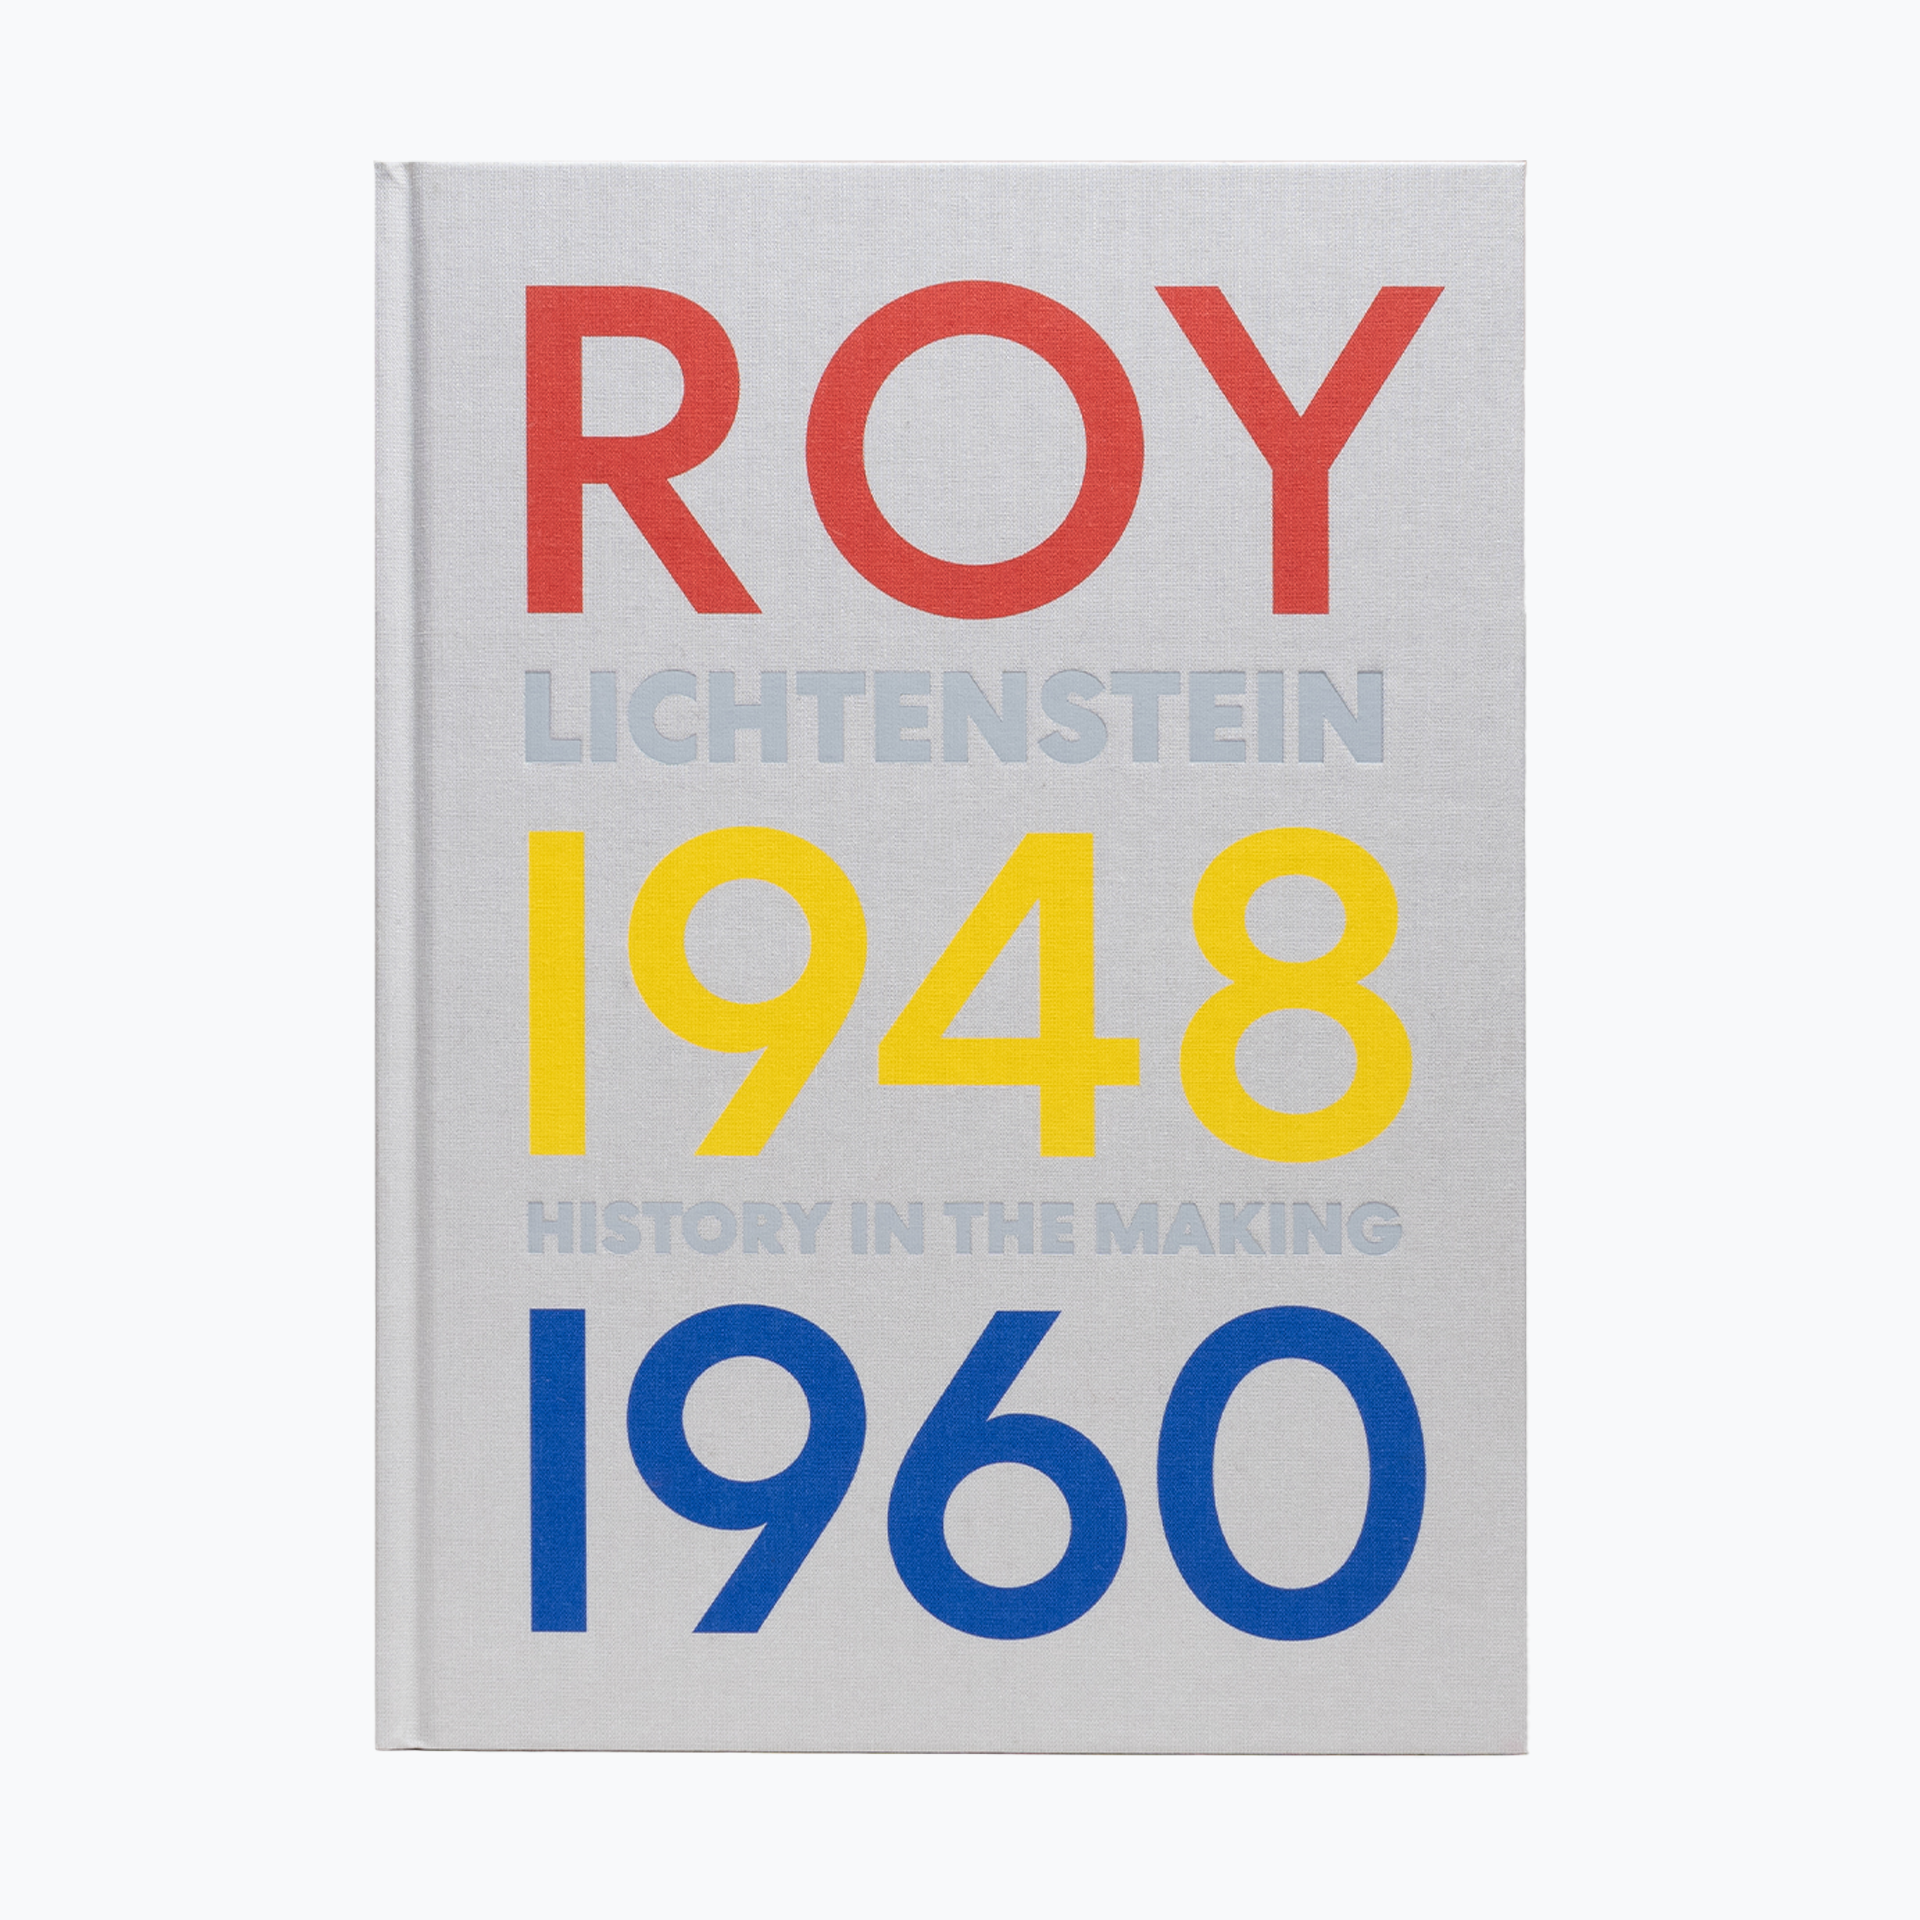 Roy Lichtenstein - History in the Making, 1948-1960